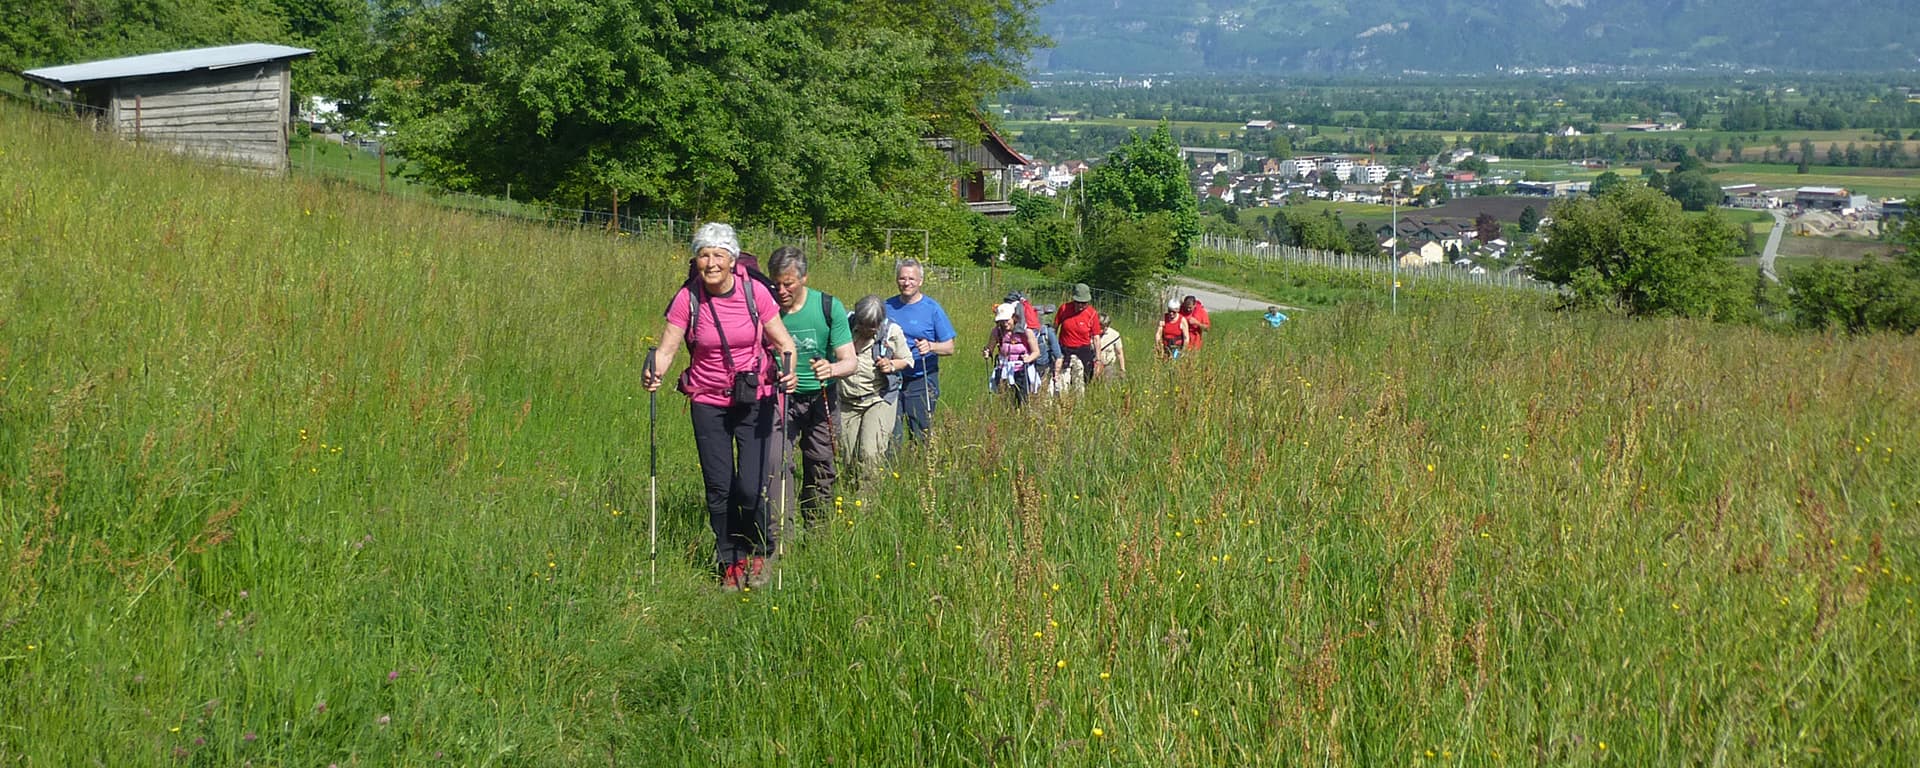 Wandergruppe in Wiese